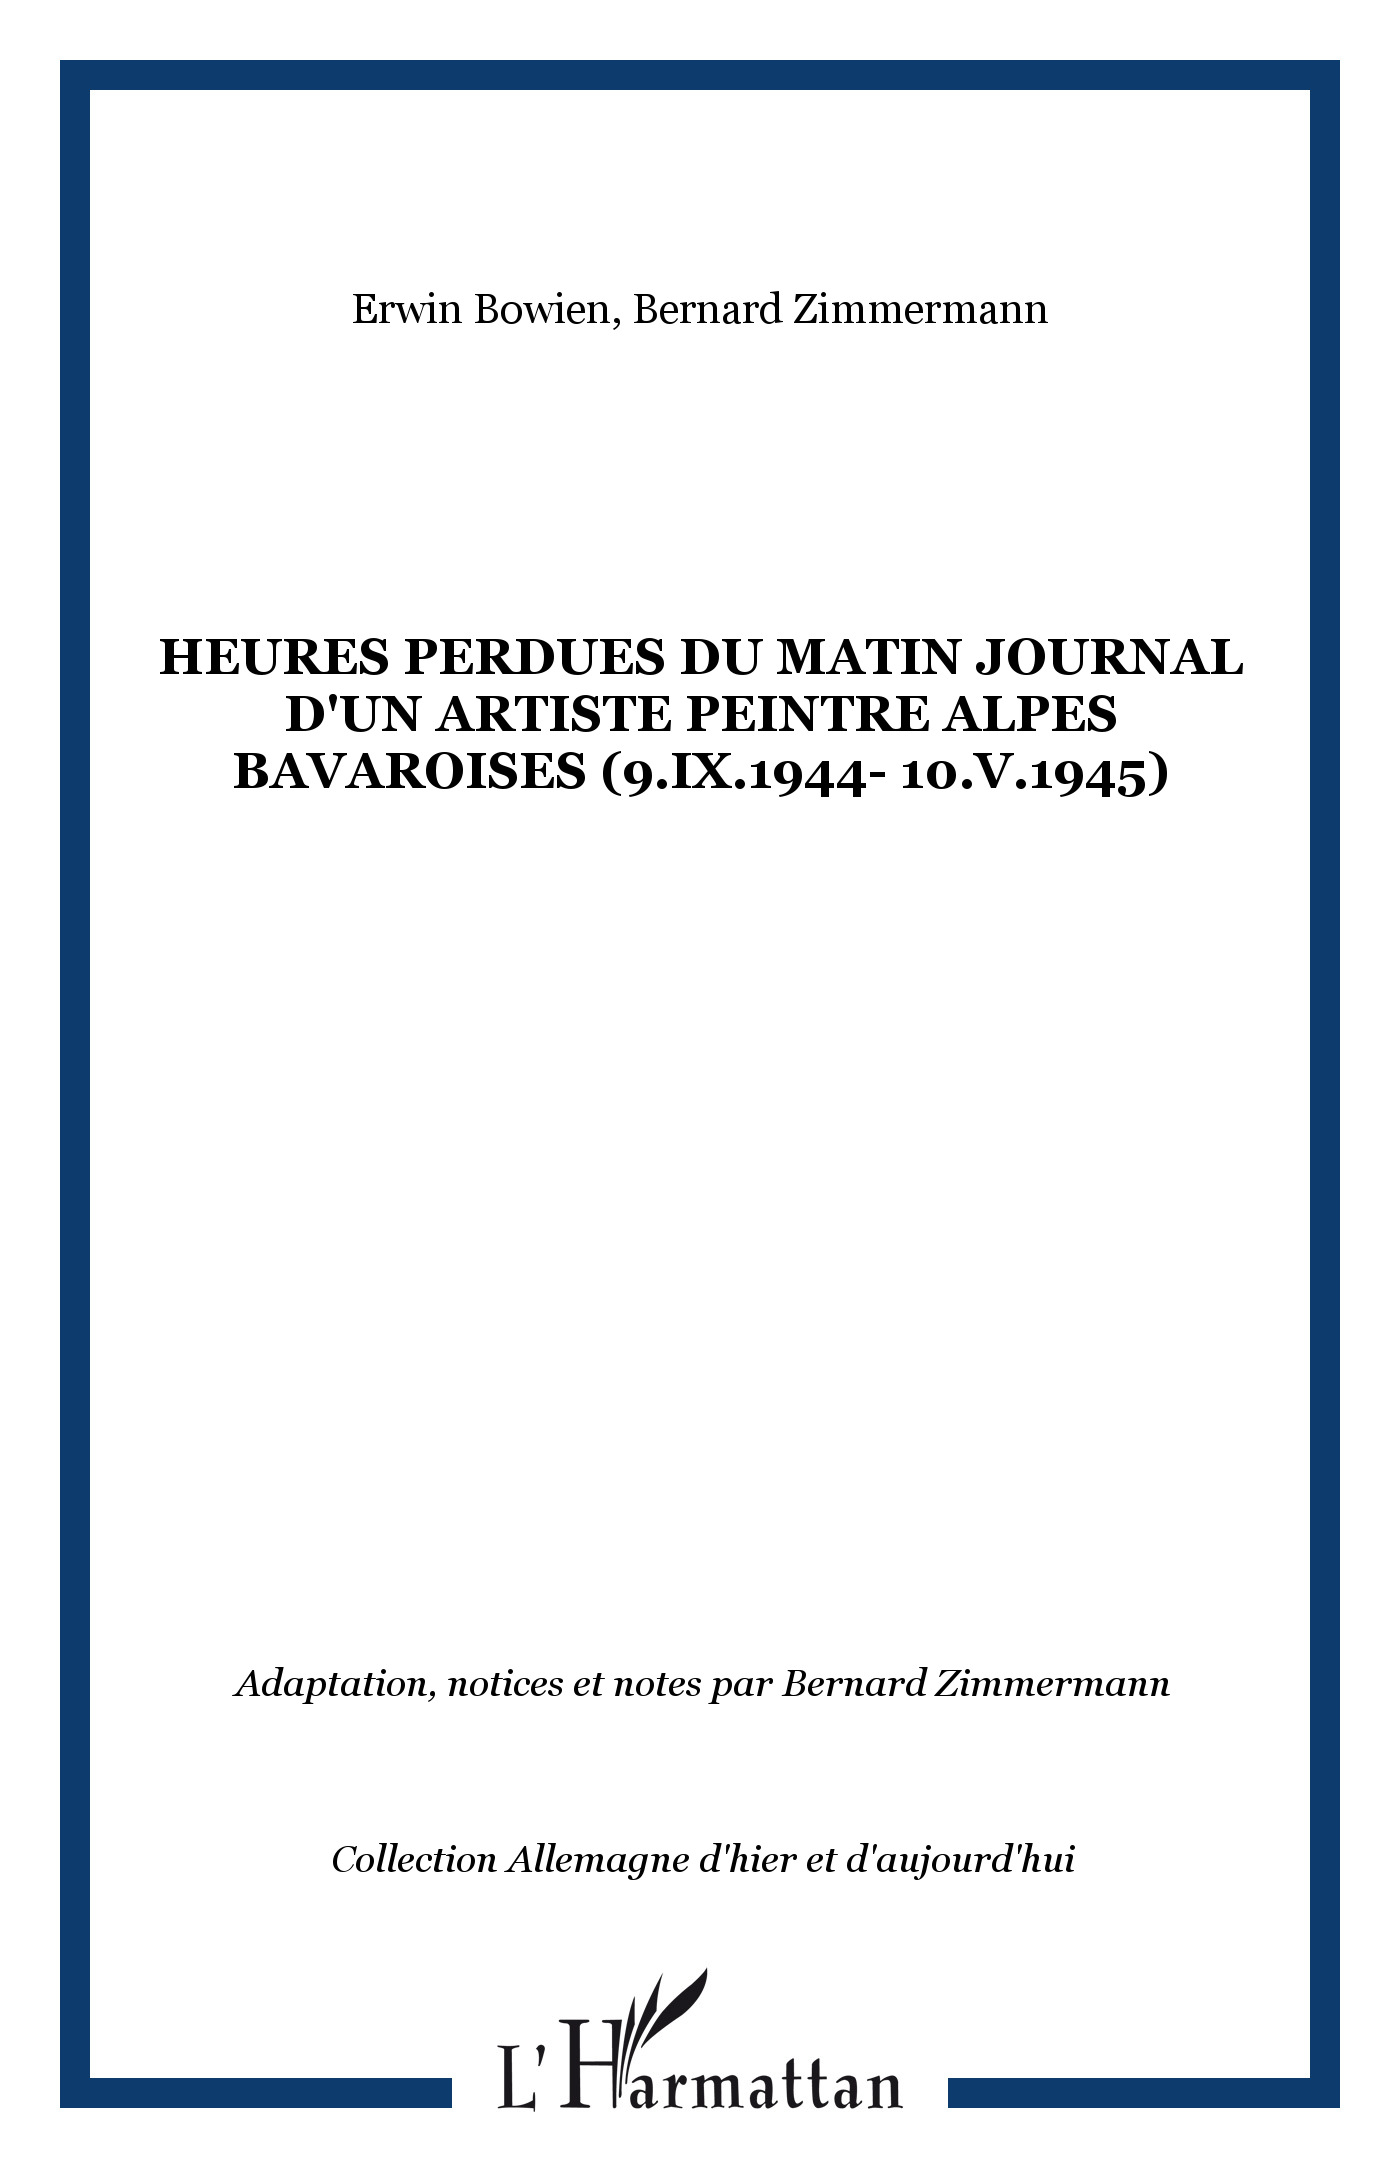 HEURES PERDUES DU MATIN JOURNAL D'UN ARTISTE PEINTRE ALPES BAVAROISES (9.IX.1944- 10.V.1945) - Bowien, Erwin